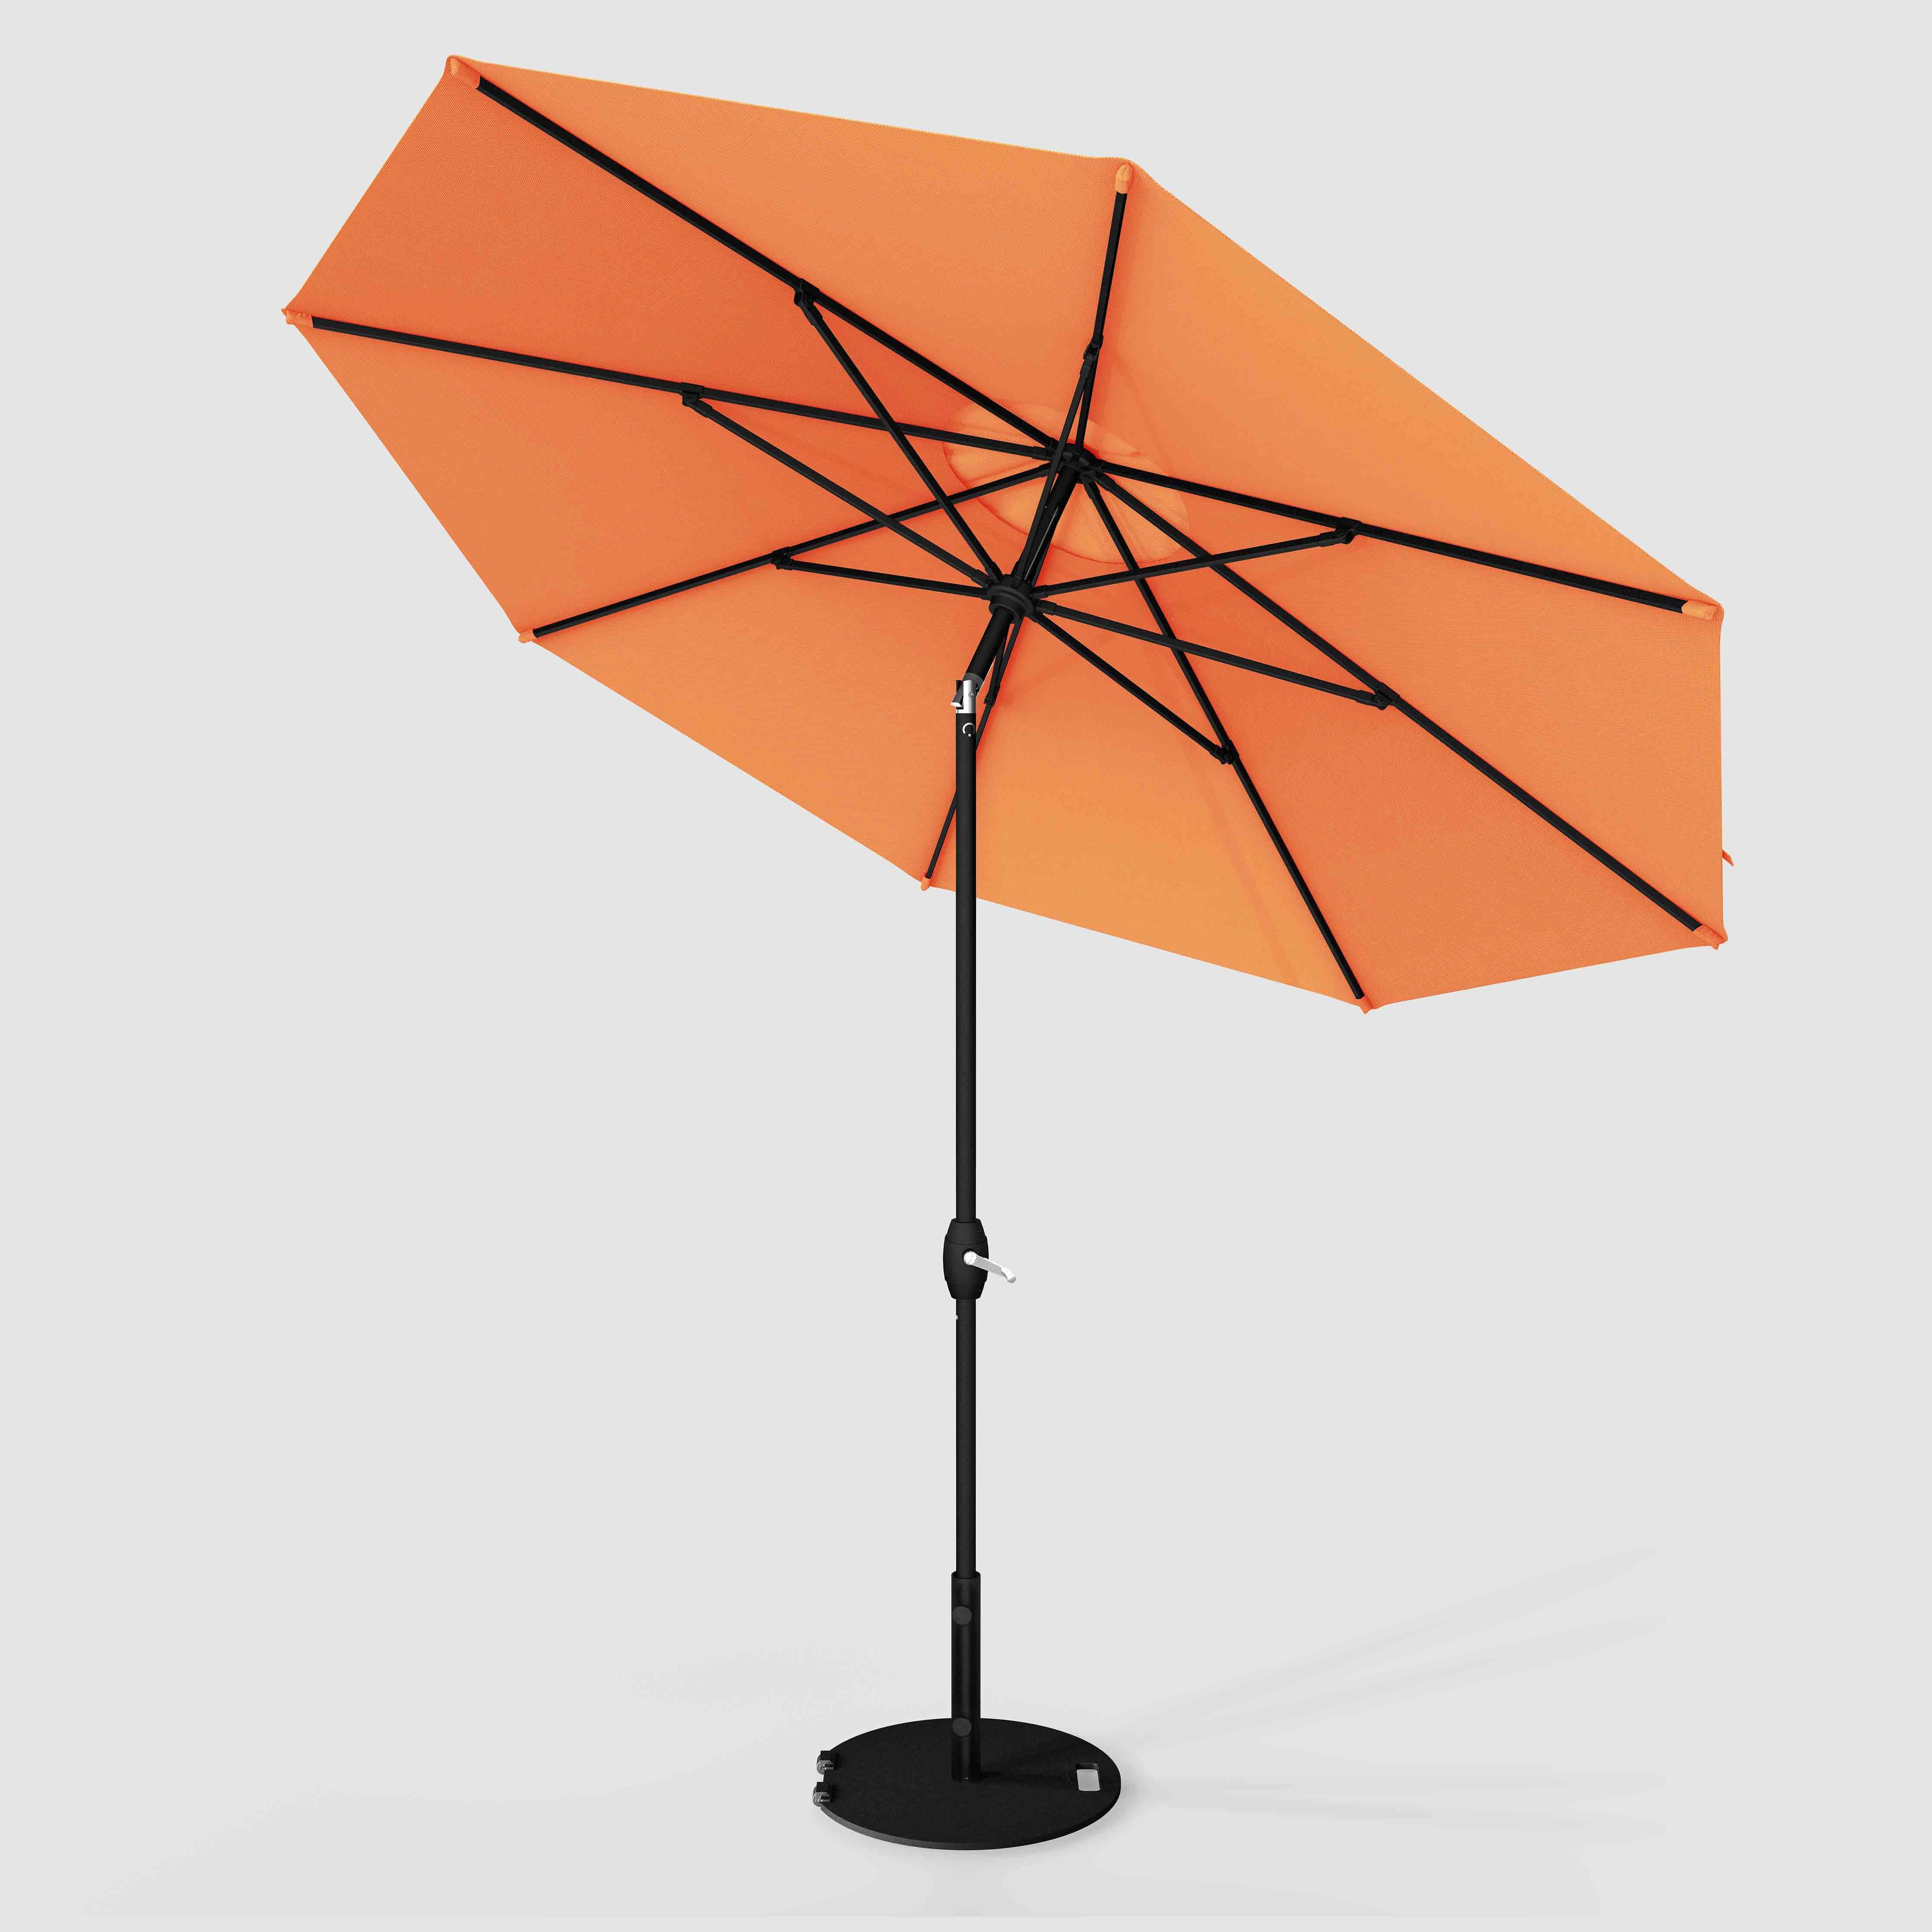 The Lean™ - Sunbrella Canvas Tuscan